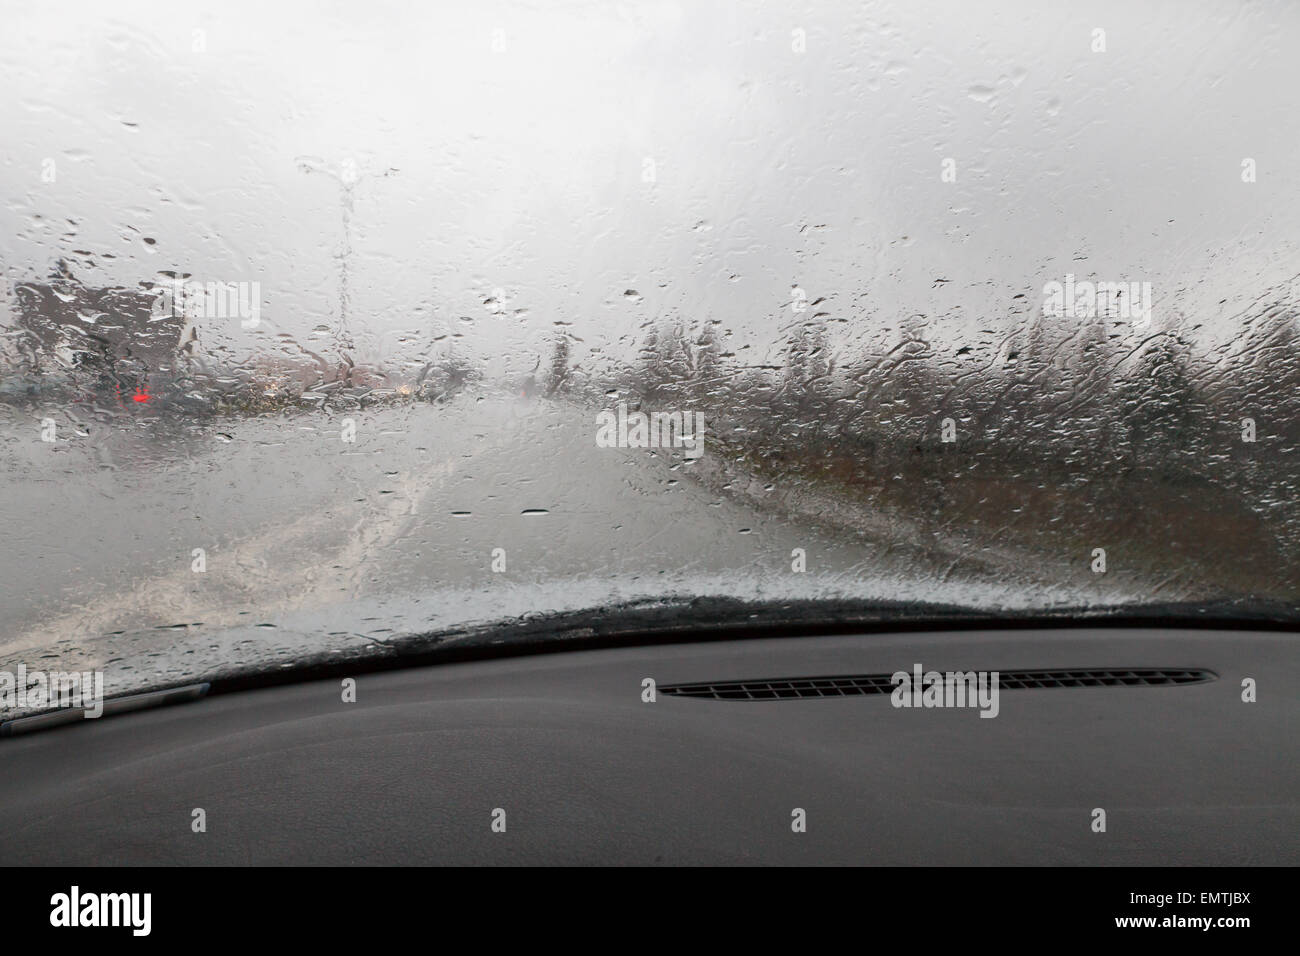 La guida in condizioni di cattivo tempo Foto Stock